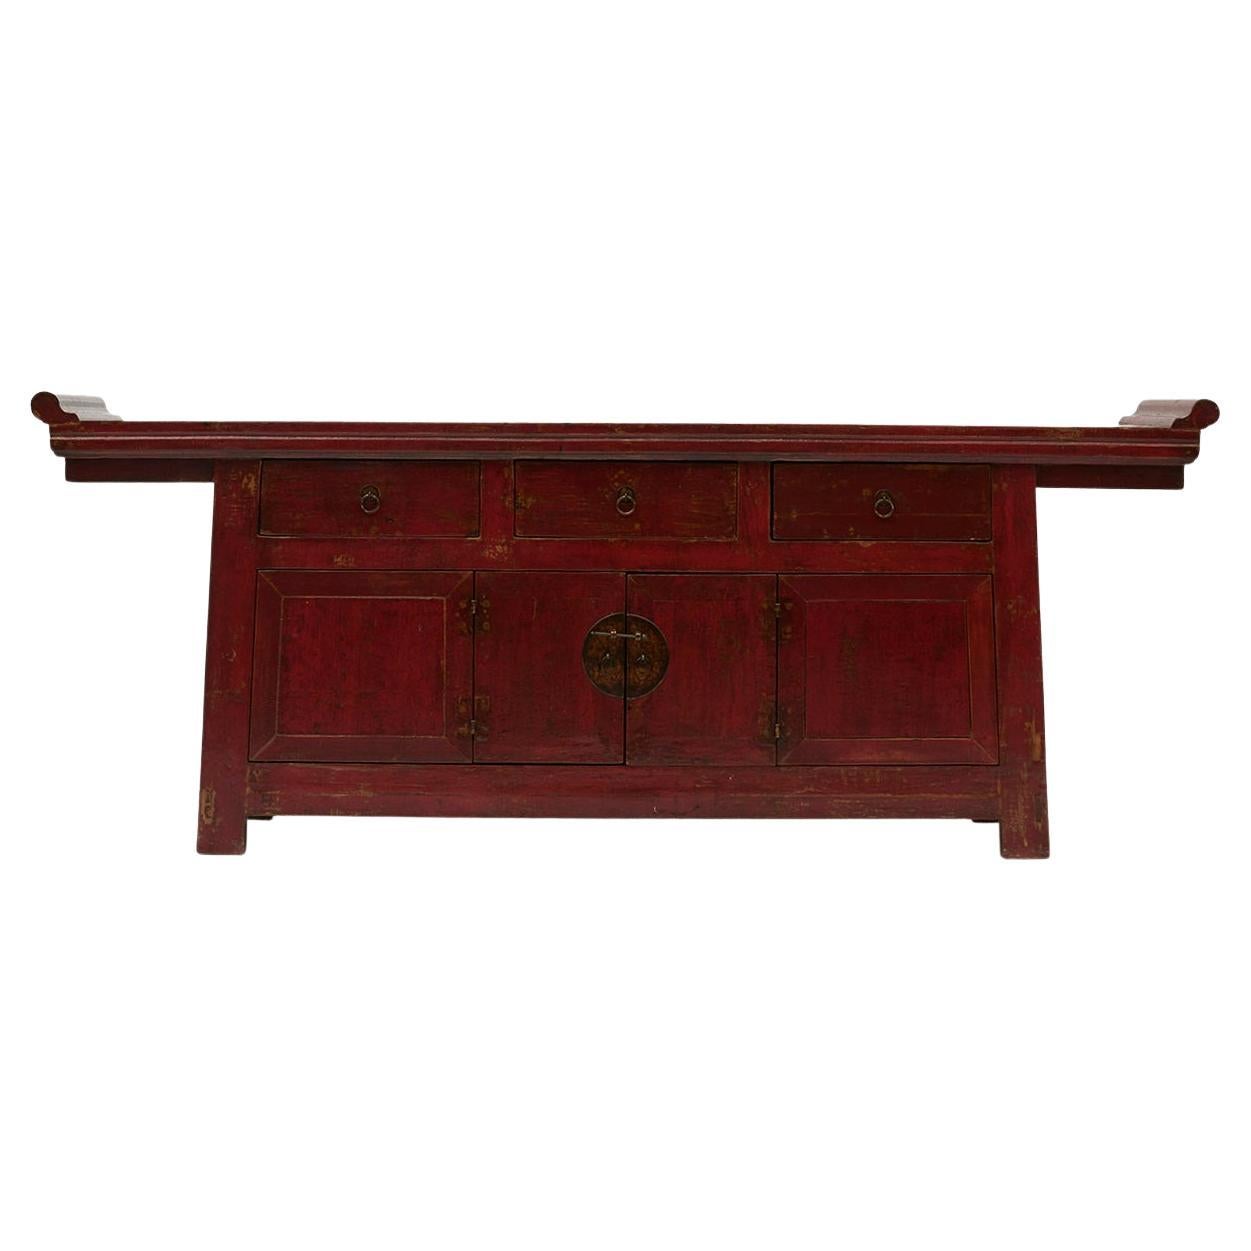 Altar Sideboard - 25 For Sale on 1stDibs